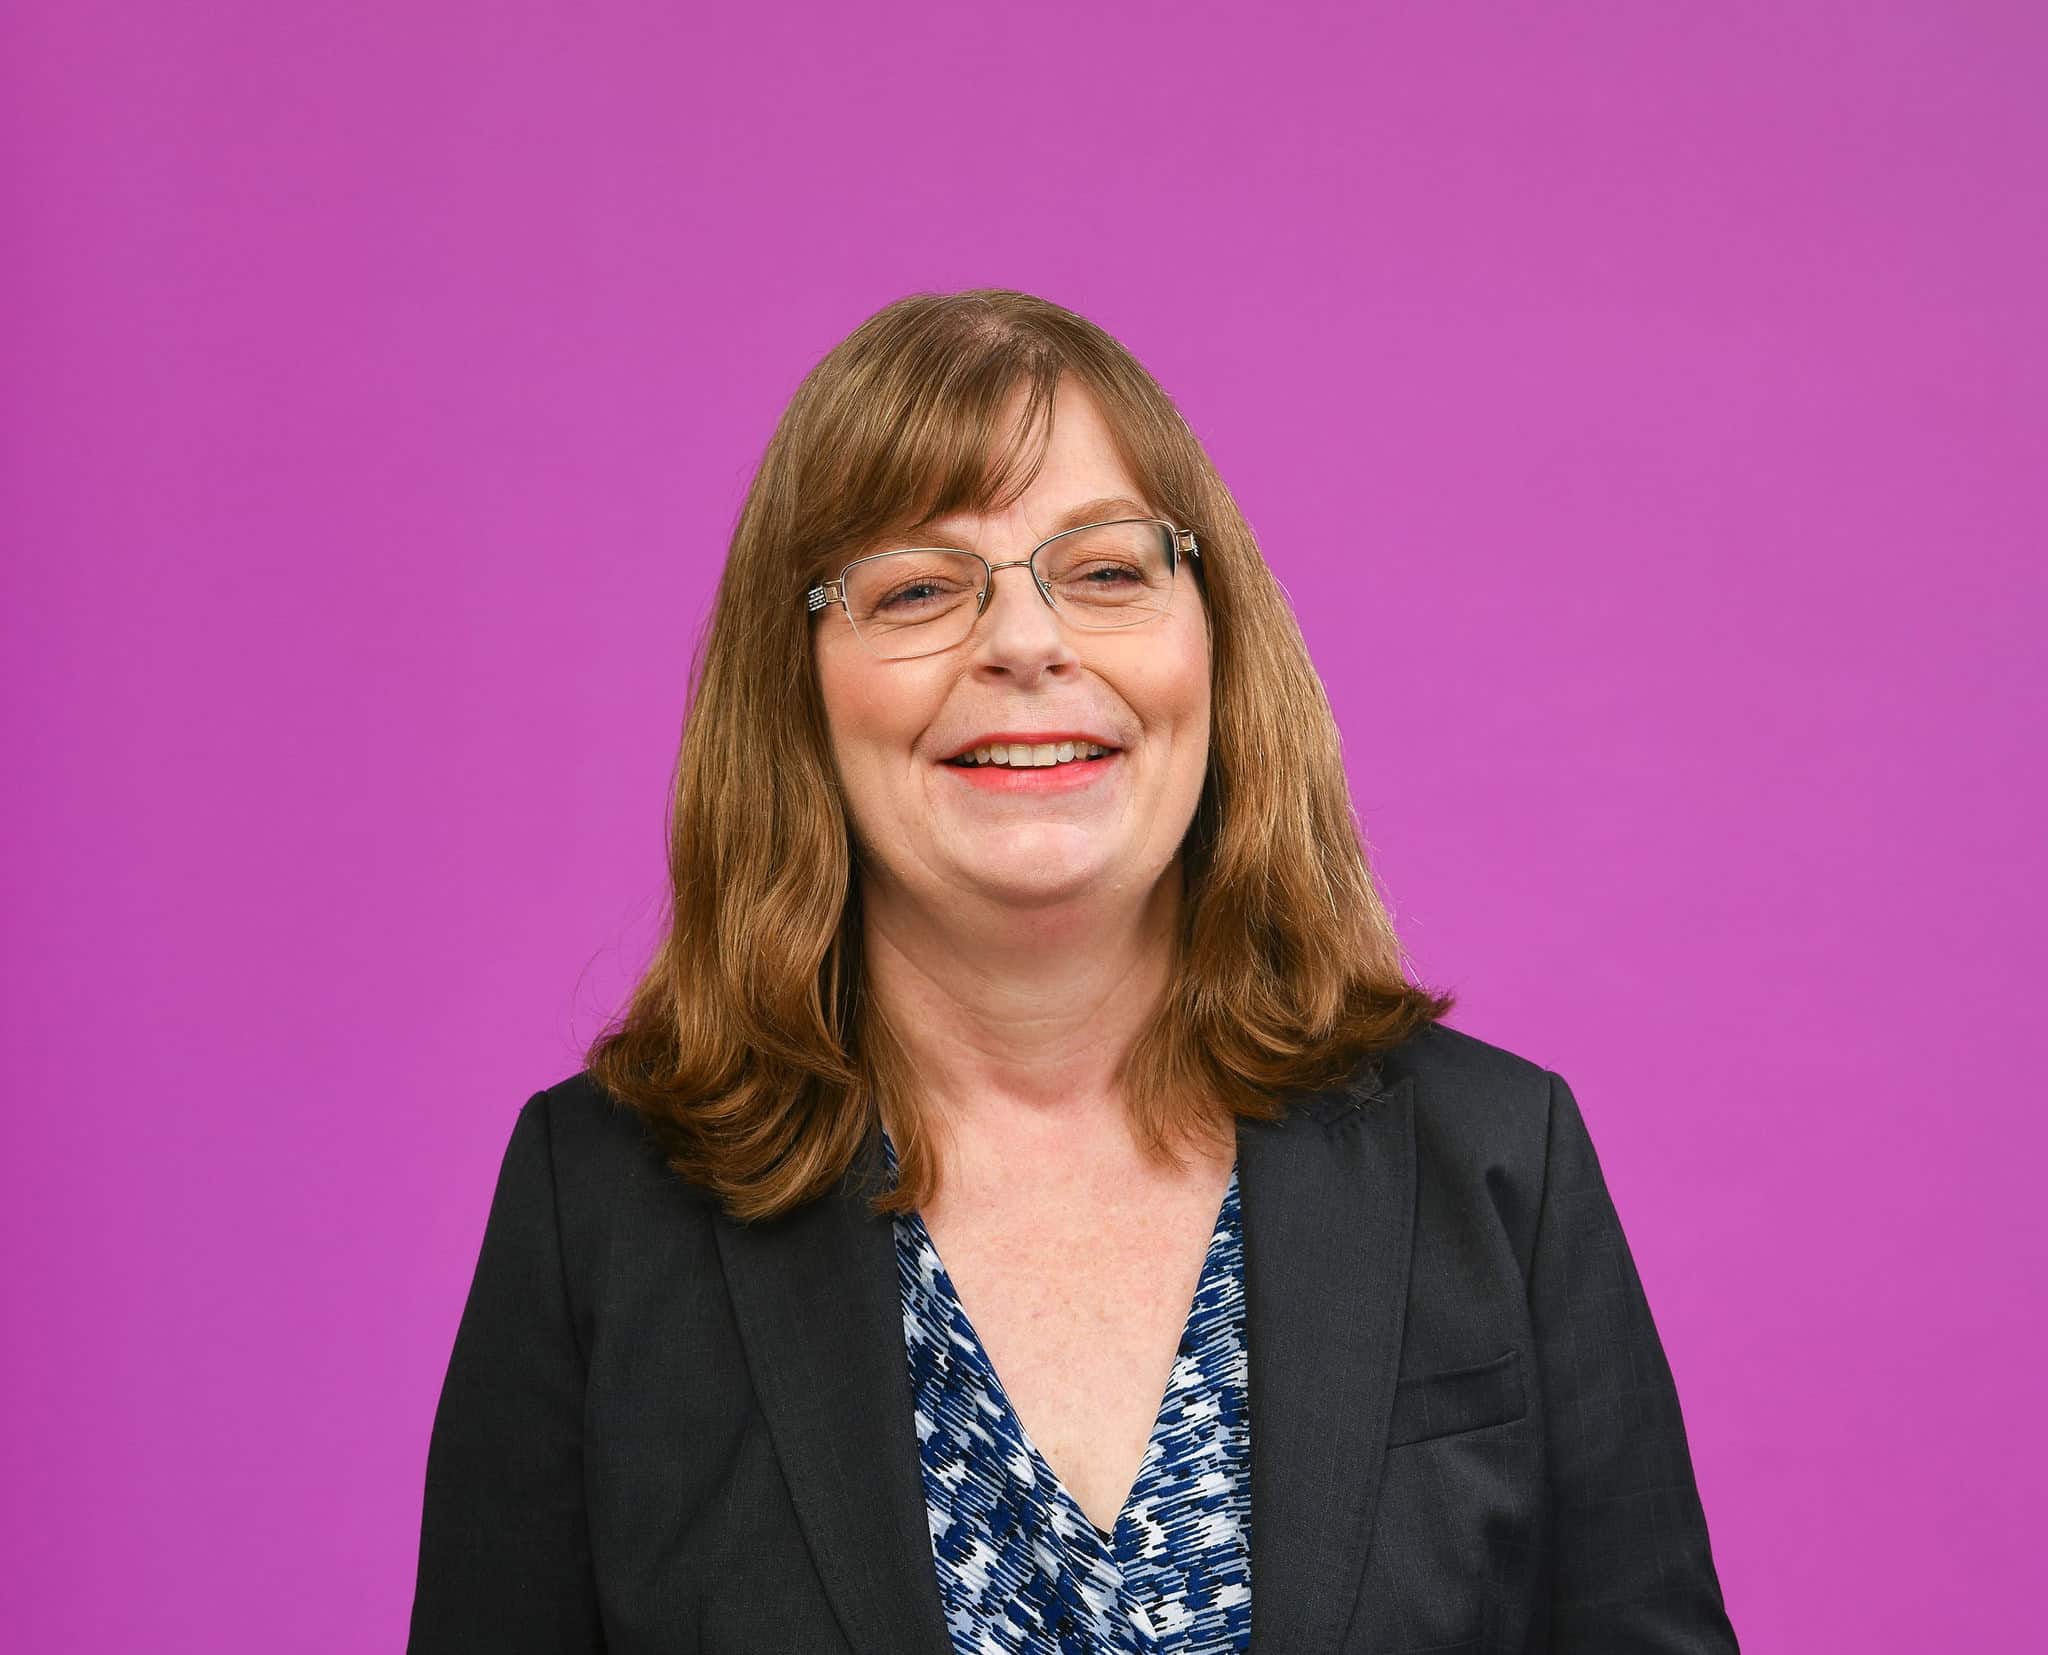 Portrait of Dr Debbie Nisbet against a purple background